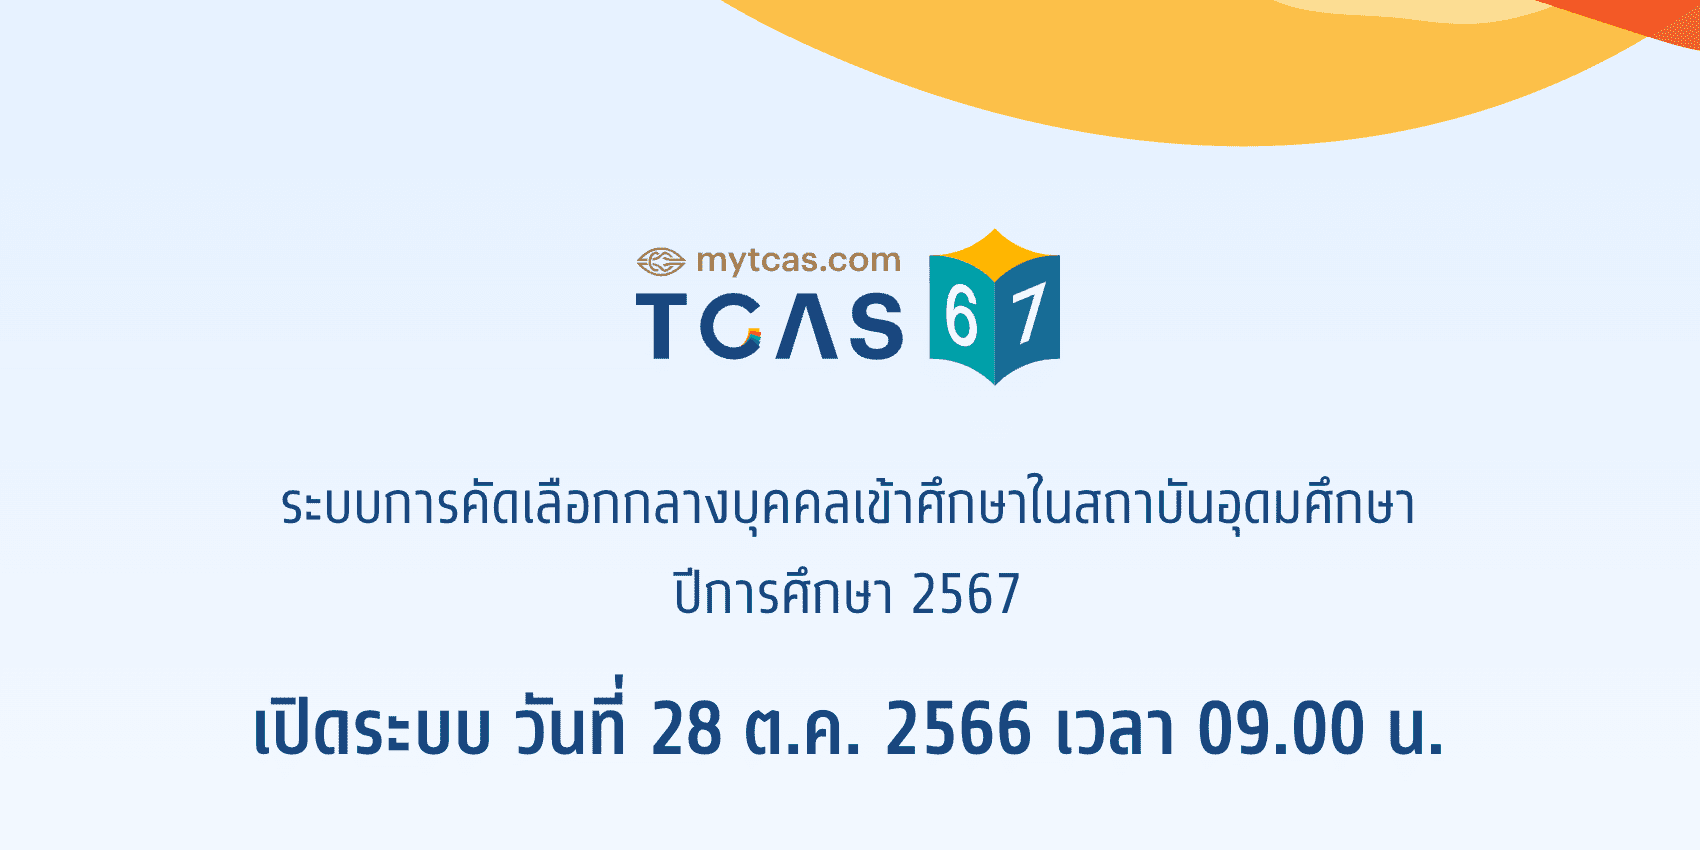 ลงทะเบียน TCAS67 ระบบ MyTCAS วันไหน ต้องทำยังไง และใช้เอกสารอะไร?